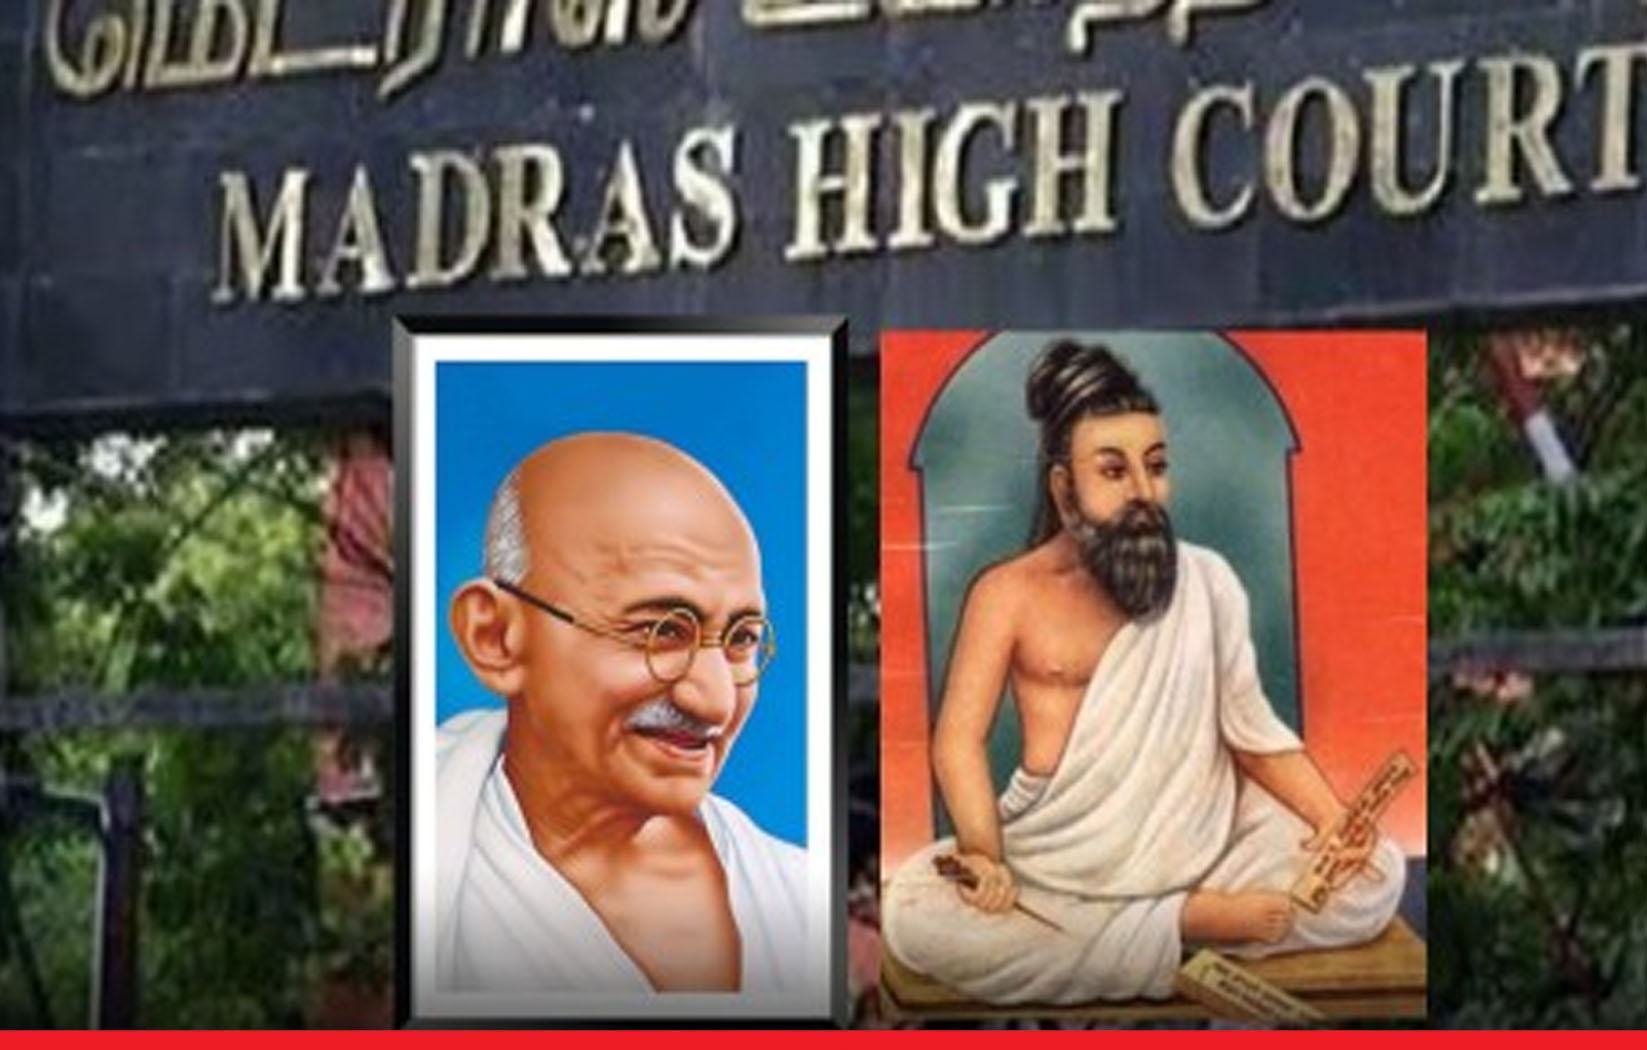 केवल महात्मा गांधी और संत तिरुवल्लुवर की फोटो लगा सकते हैं, अंबेडकर की नहीं: मद्रास हाईकोर्ट 